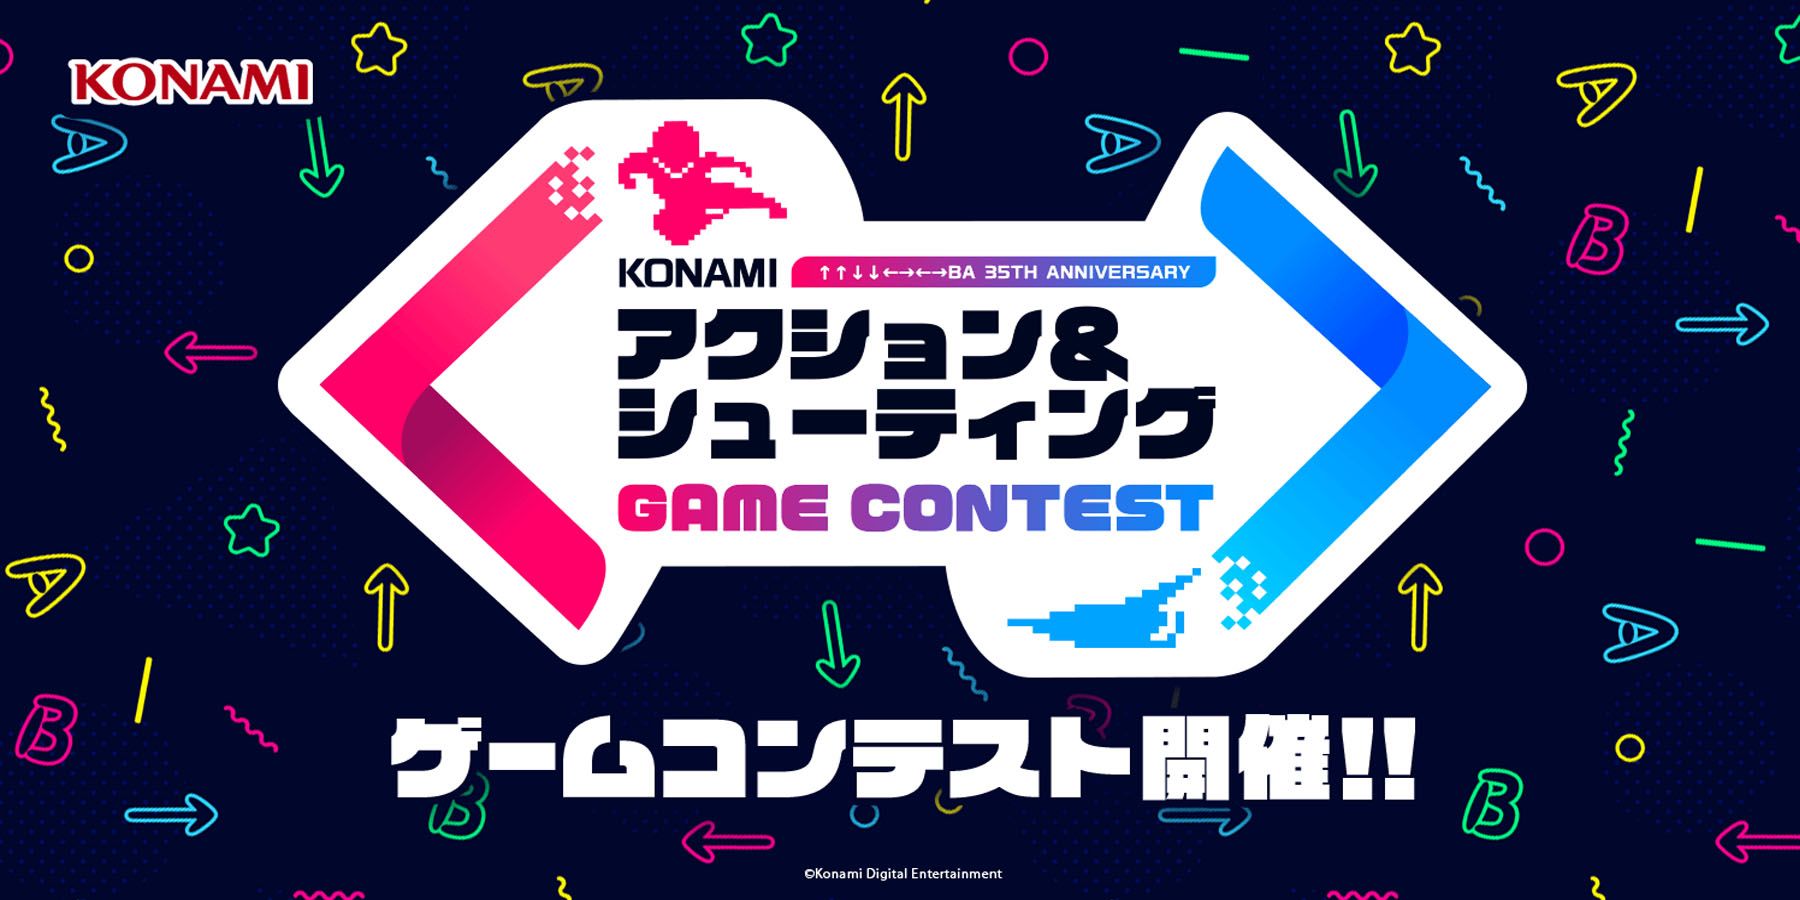 Konami lädt Indie-Entwickler ein, Spiele basierend auf klassischen Franchises zu entwickeln